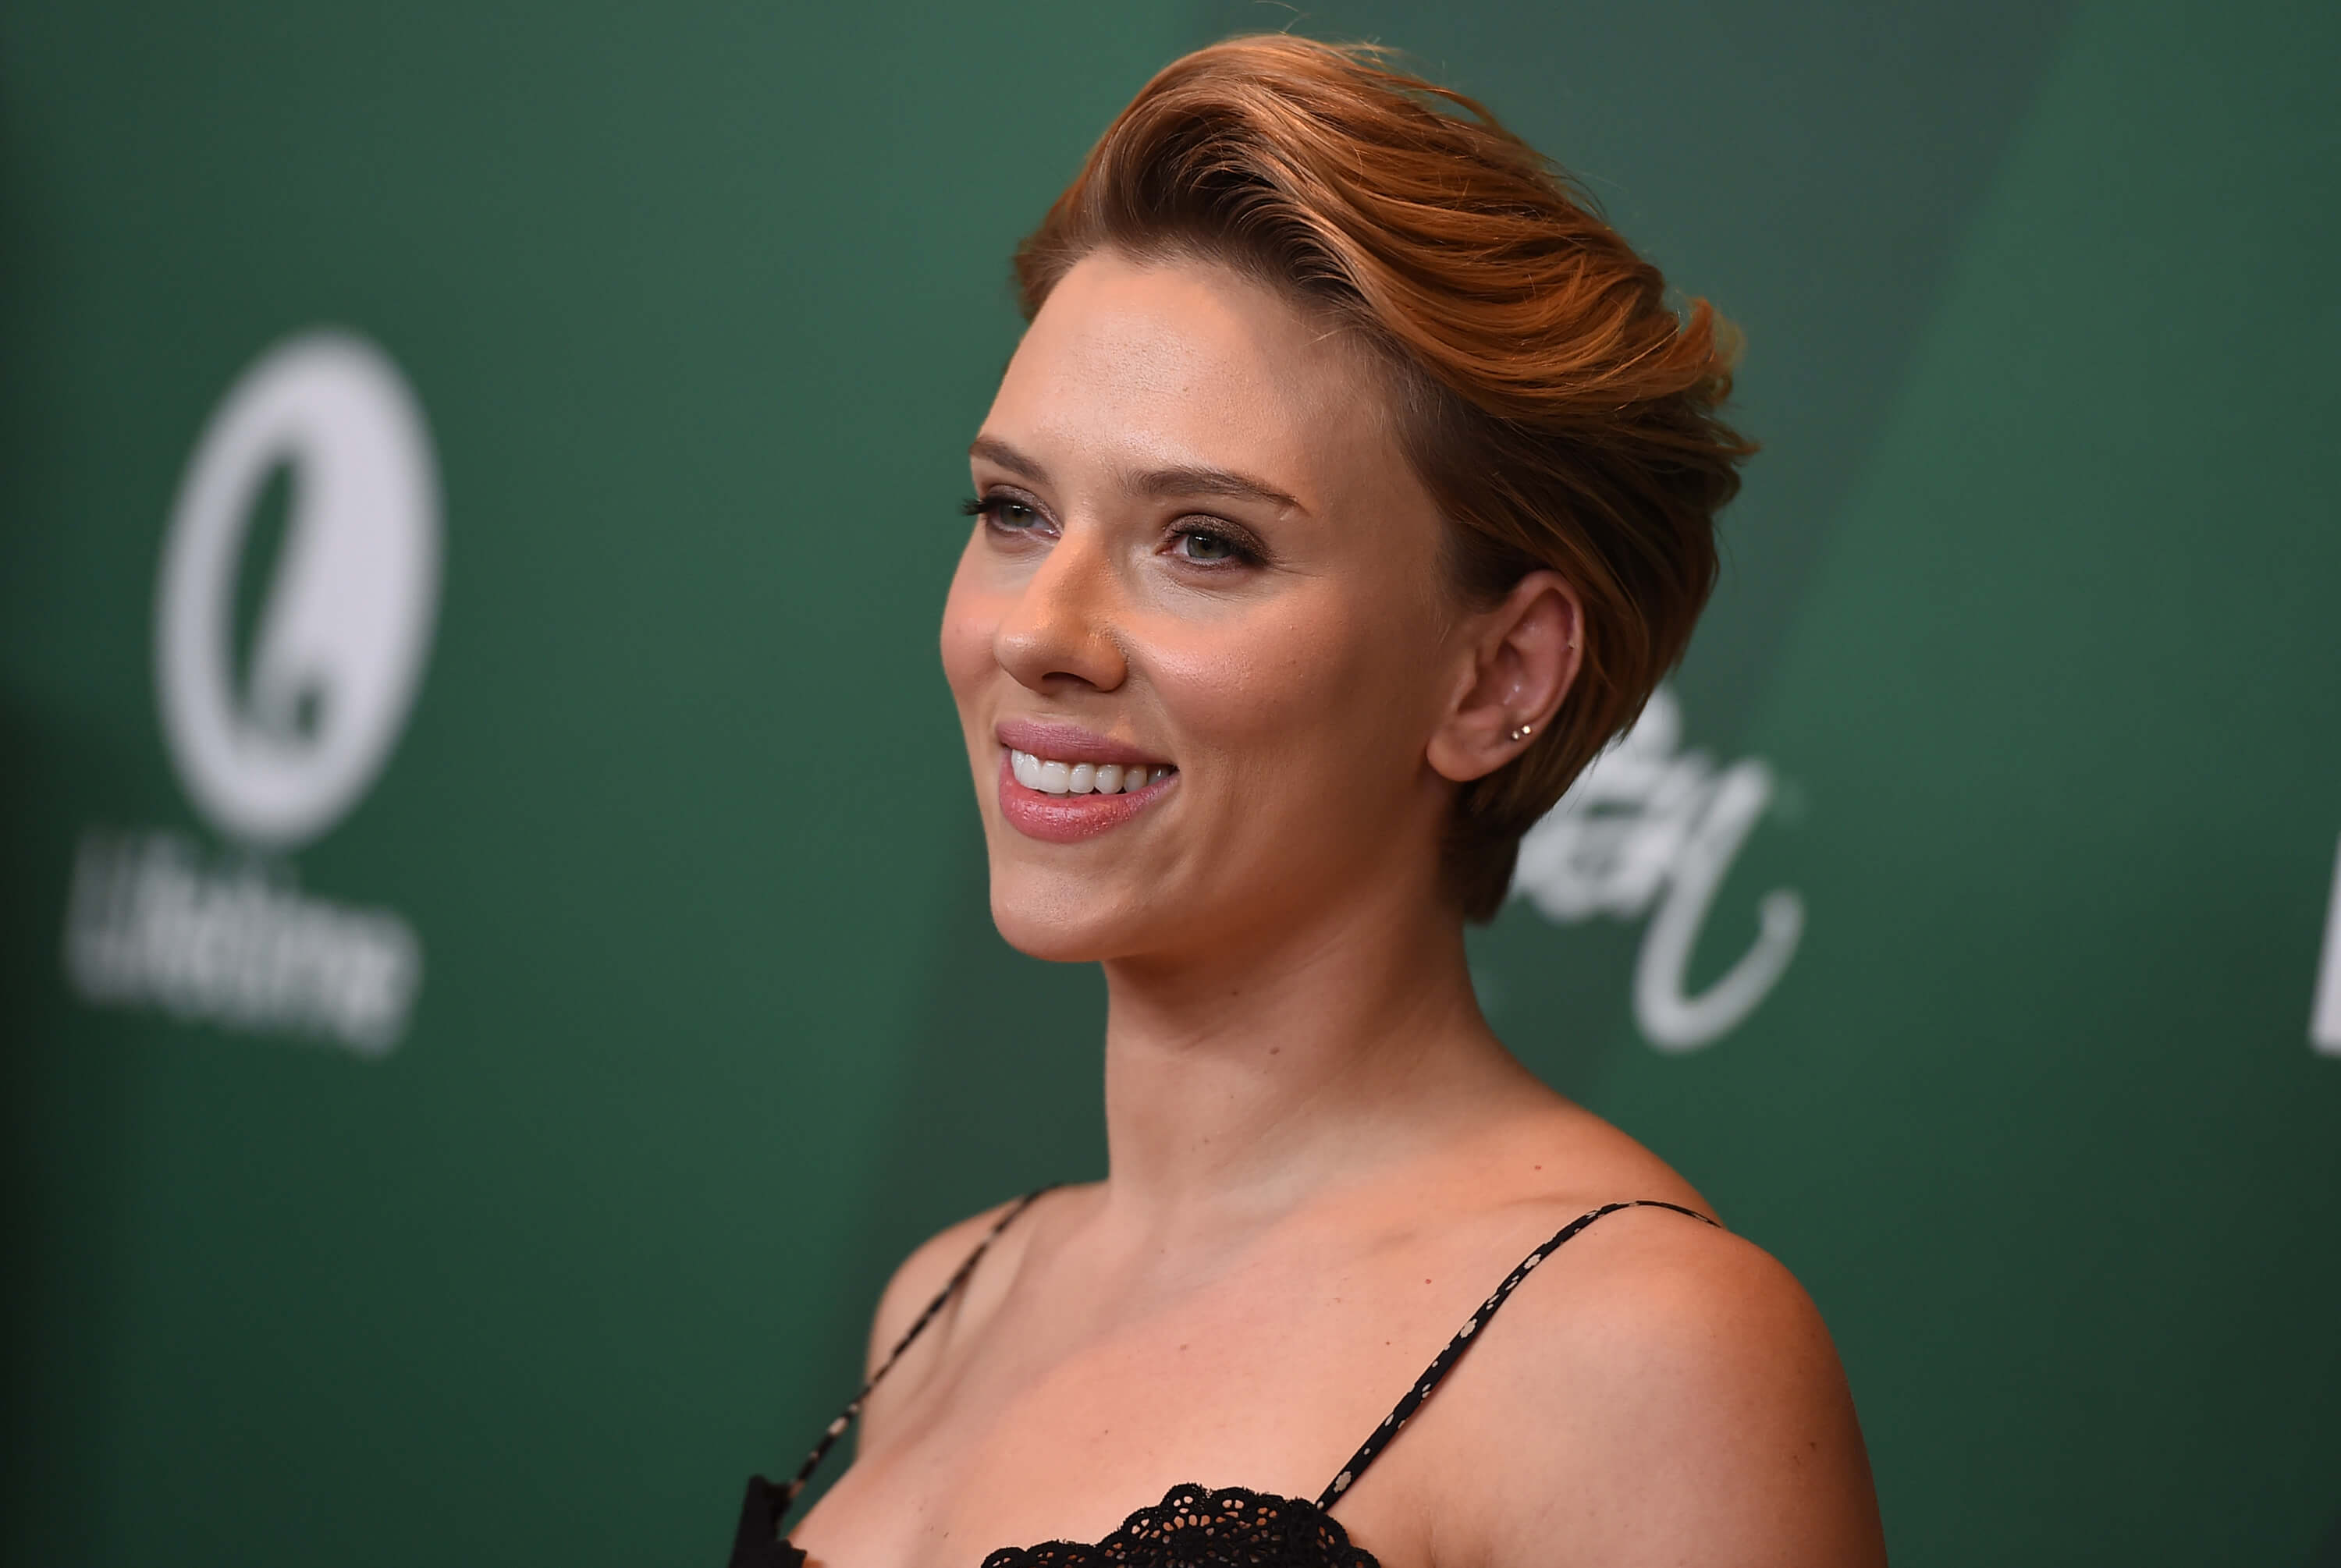 La Scarlett Johansson y Romain Dauriac, un periodista y coleccionista de arte, se casaron en secreto en 2014 en Estados Unidos.